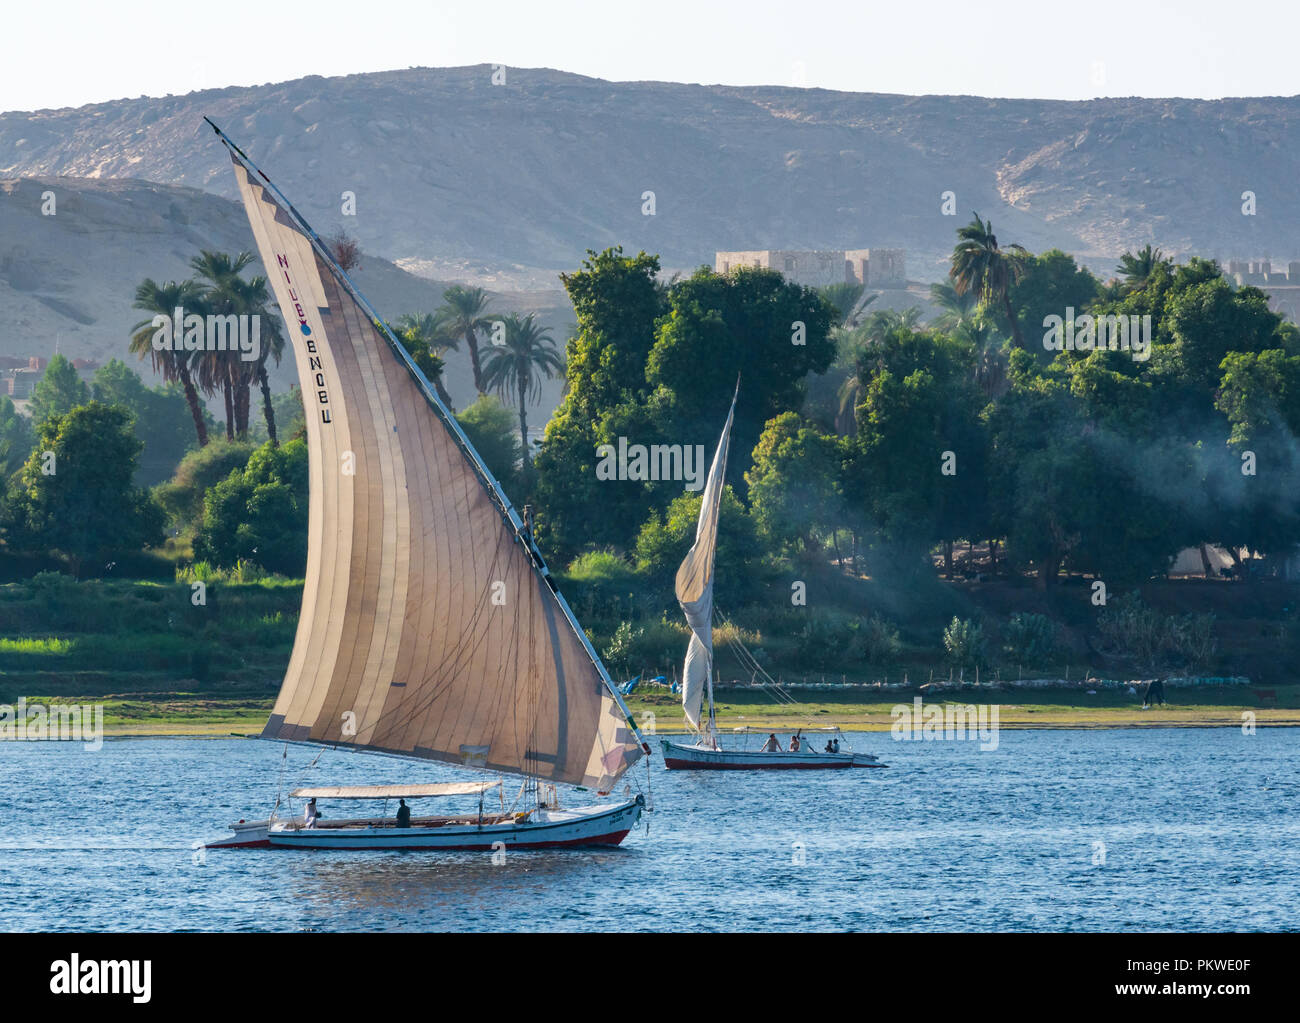 Die traditionellen Feluke segeln Boote, der Nil mit Bäumen am Flussufer und Wüste Felsen im Abstand in der Dämmerung Licht, Assuan, Ägypten, Afrika Stockfoto